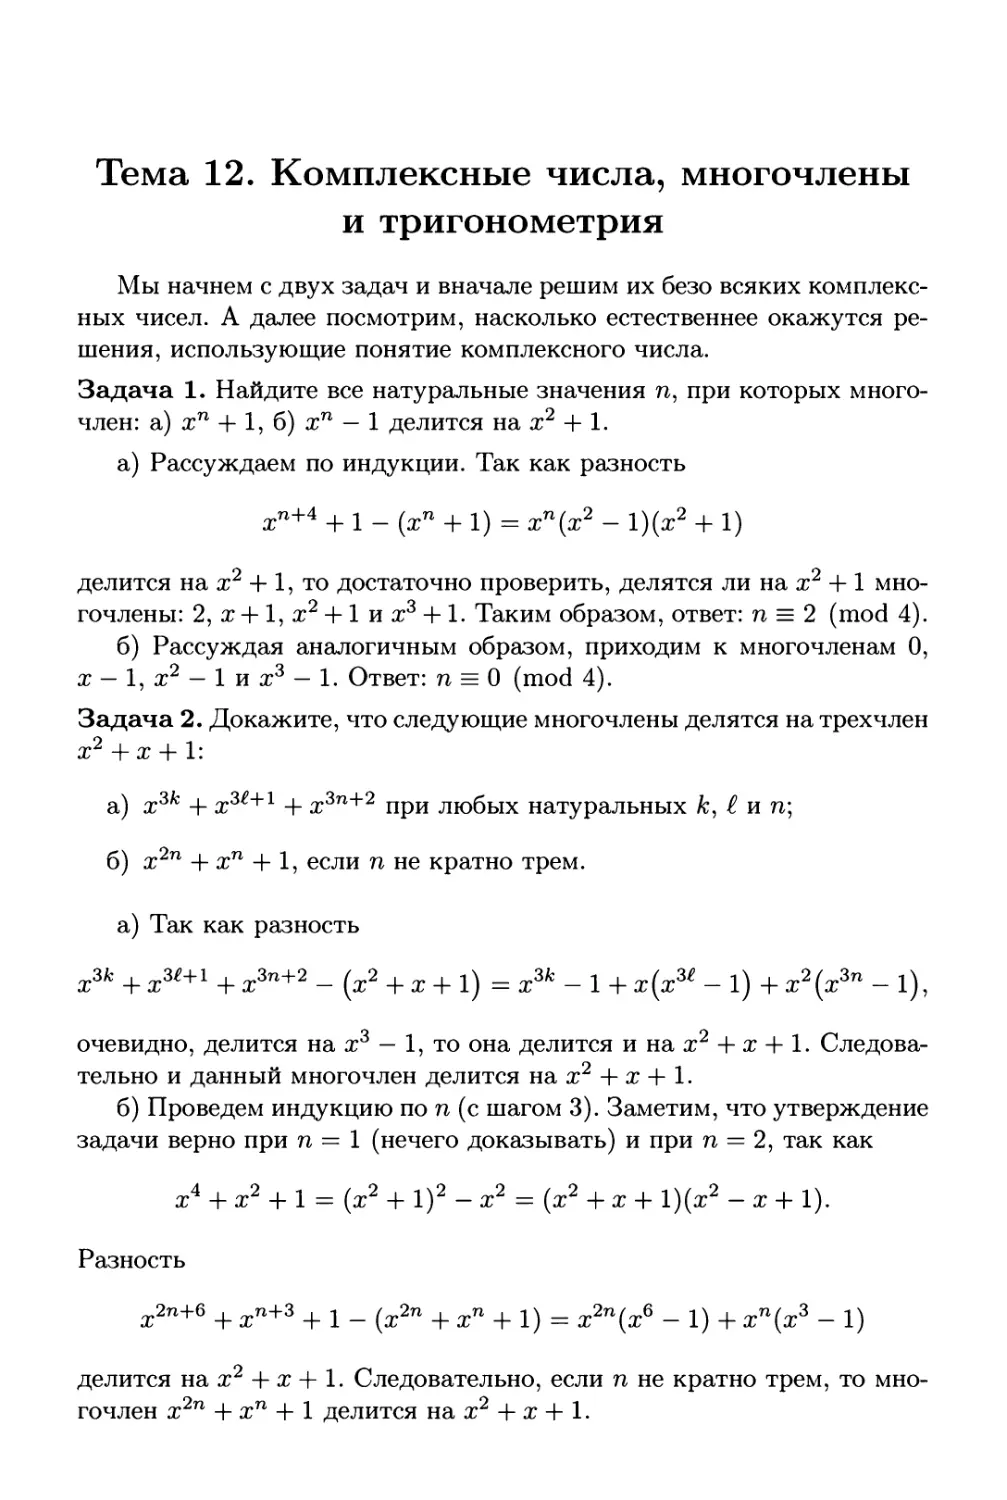 Тема 12. Комплексные числа, многочлены и тригонометрия